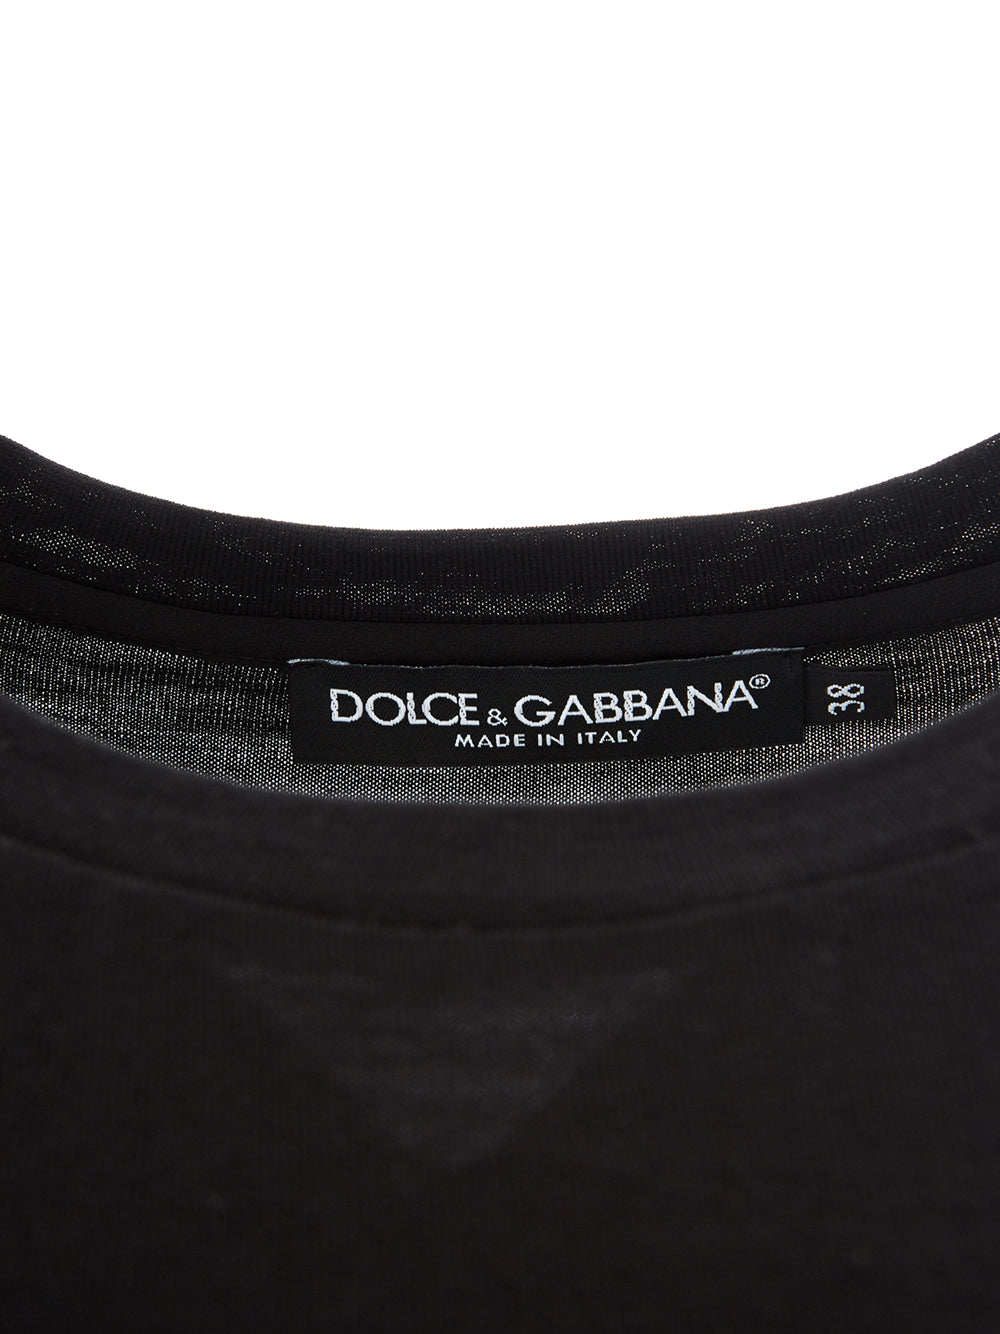 T-shirt in Lana nera Dolce & Gabbana